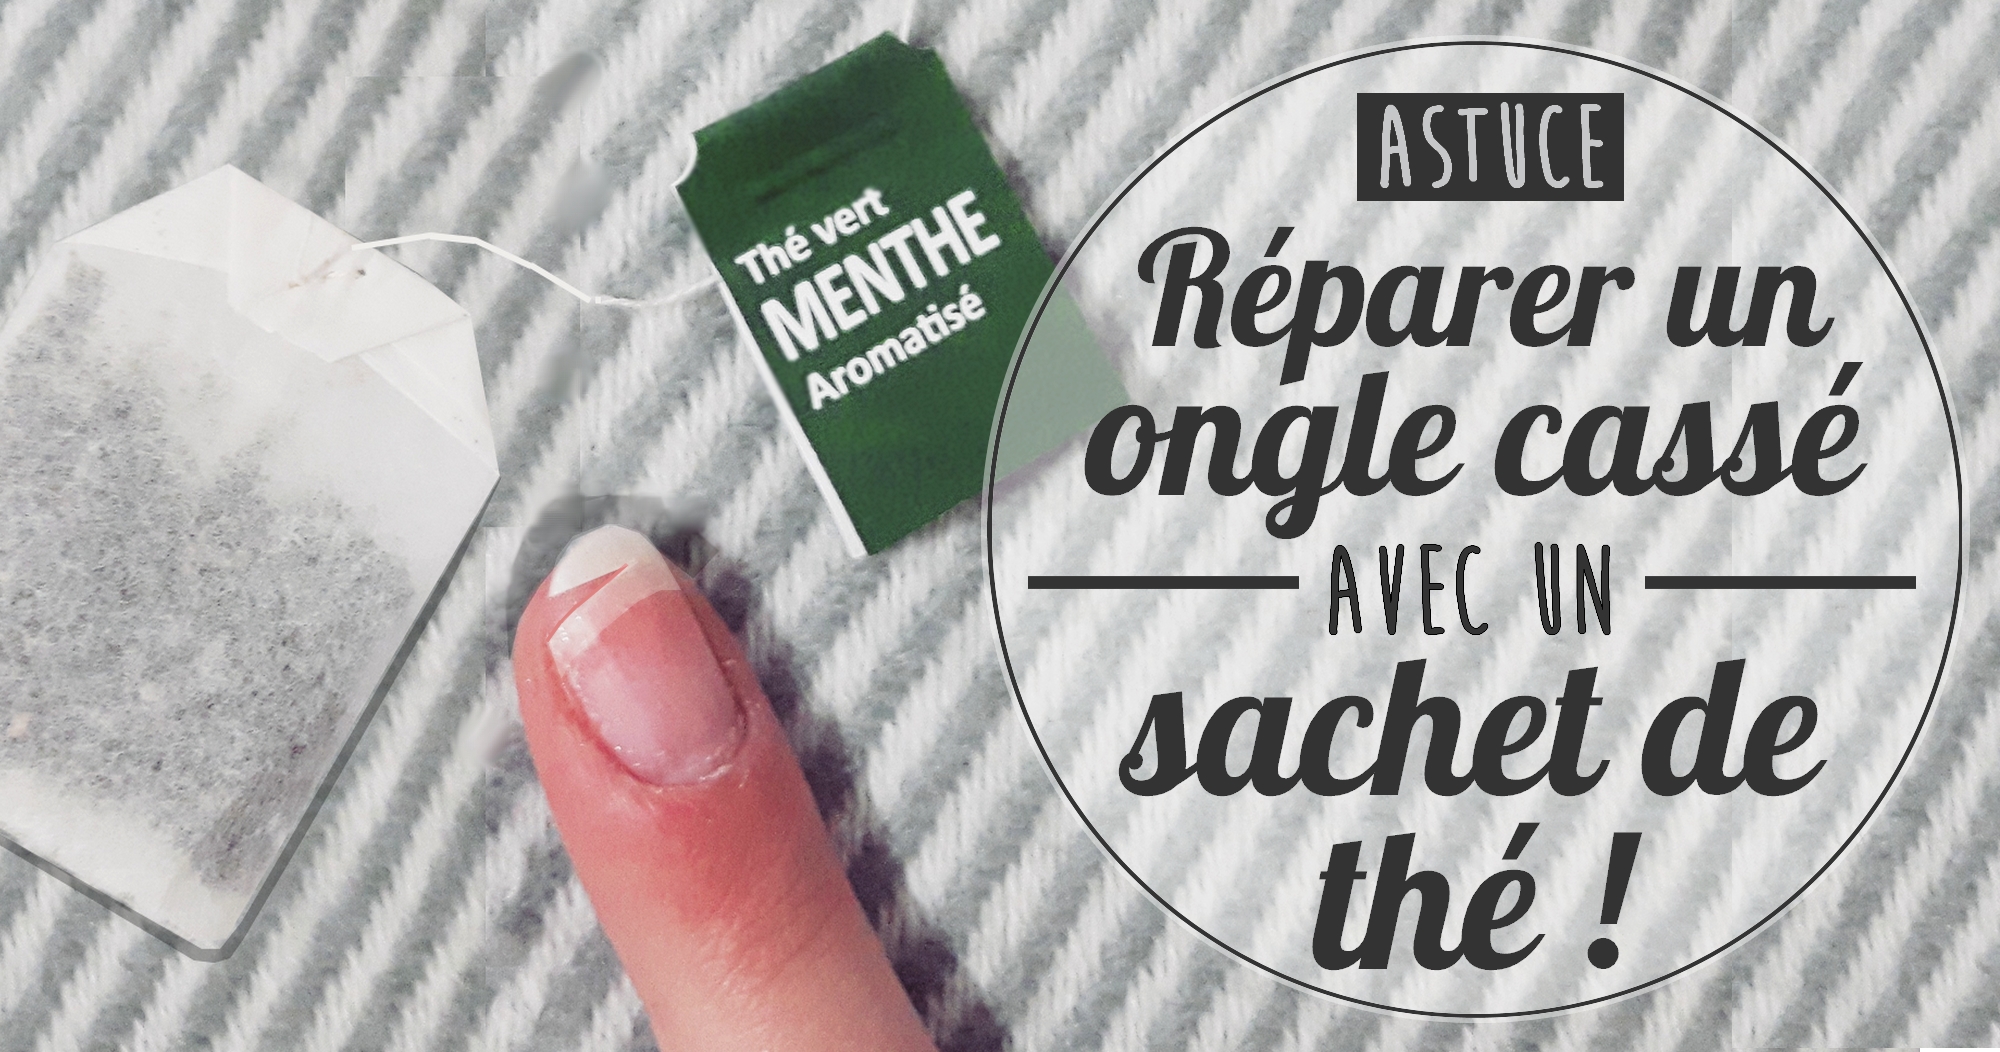 Astuce : réparer un ongle cassé… avec un sachet de thé !